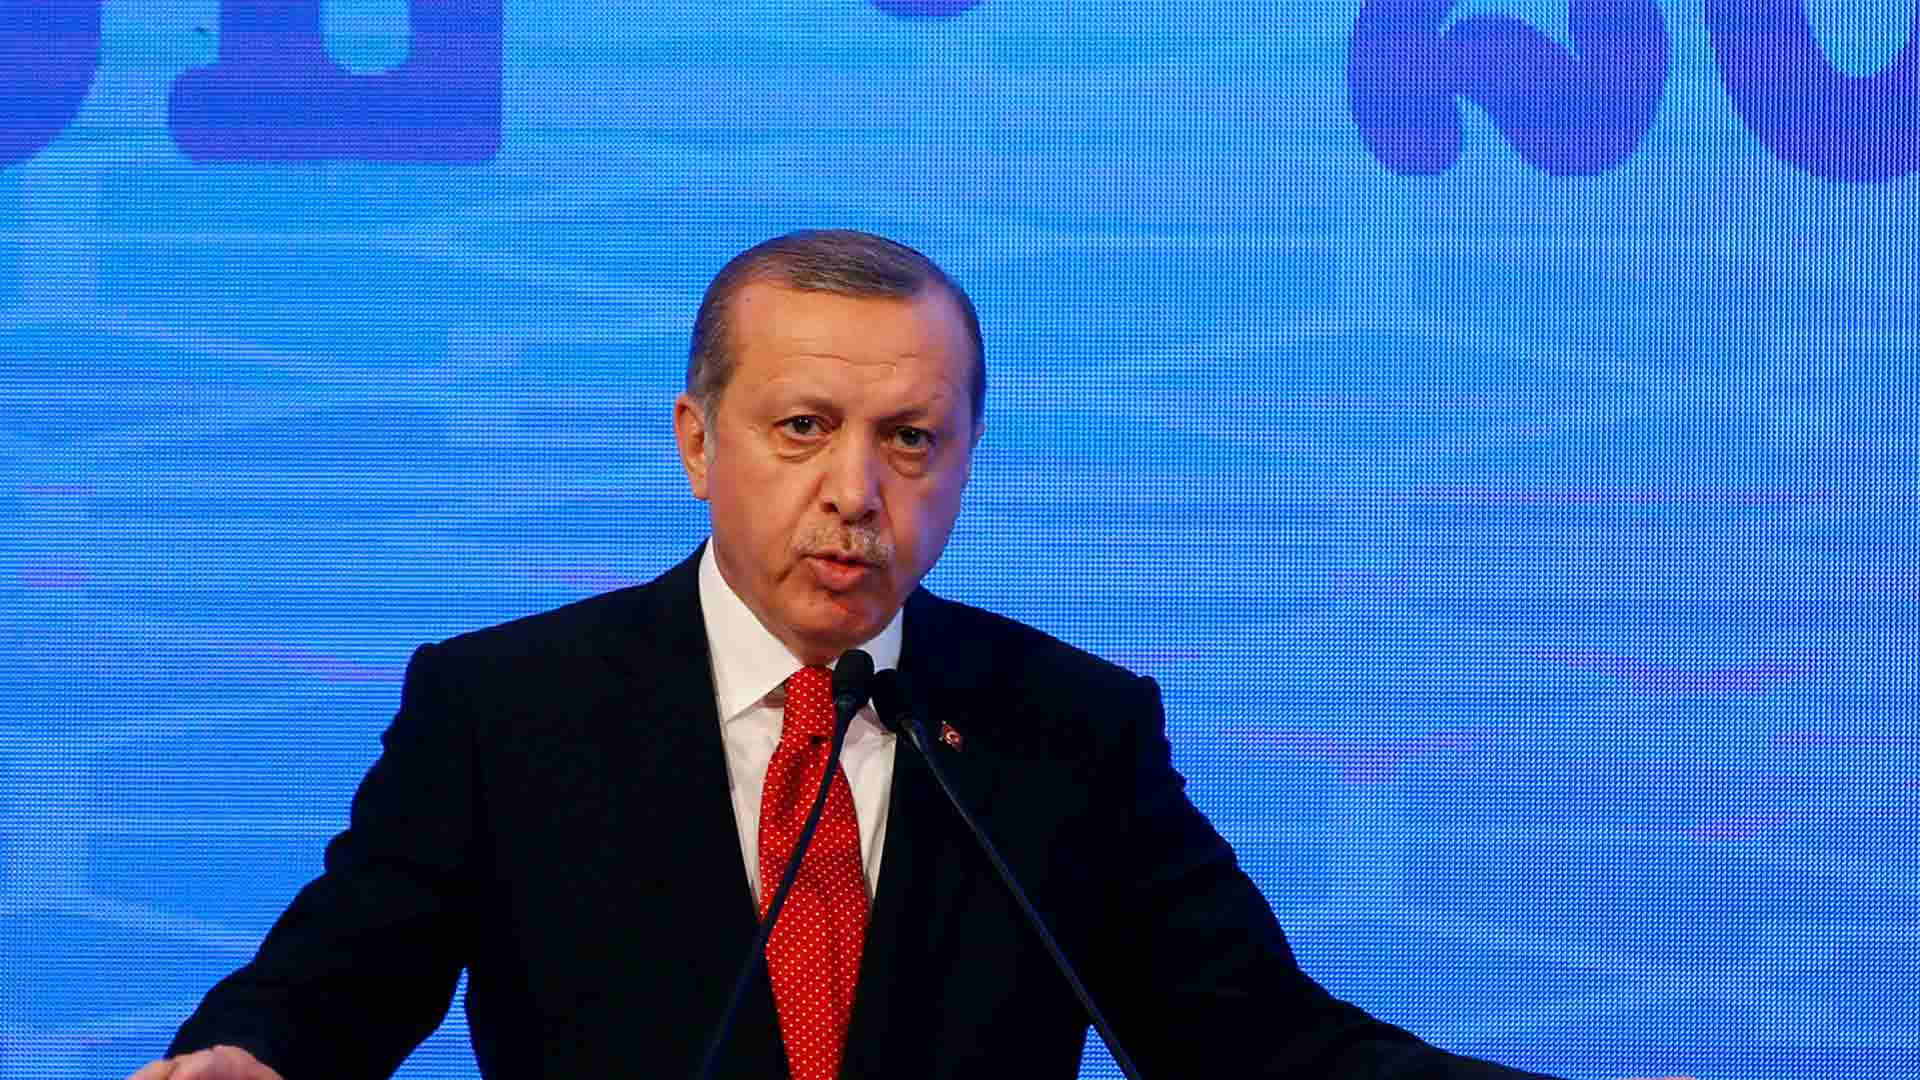 El presidente Erdogan expresó que tanto Estados Unidos como Europa deben respetar el resultado de las elecciones